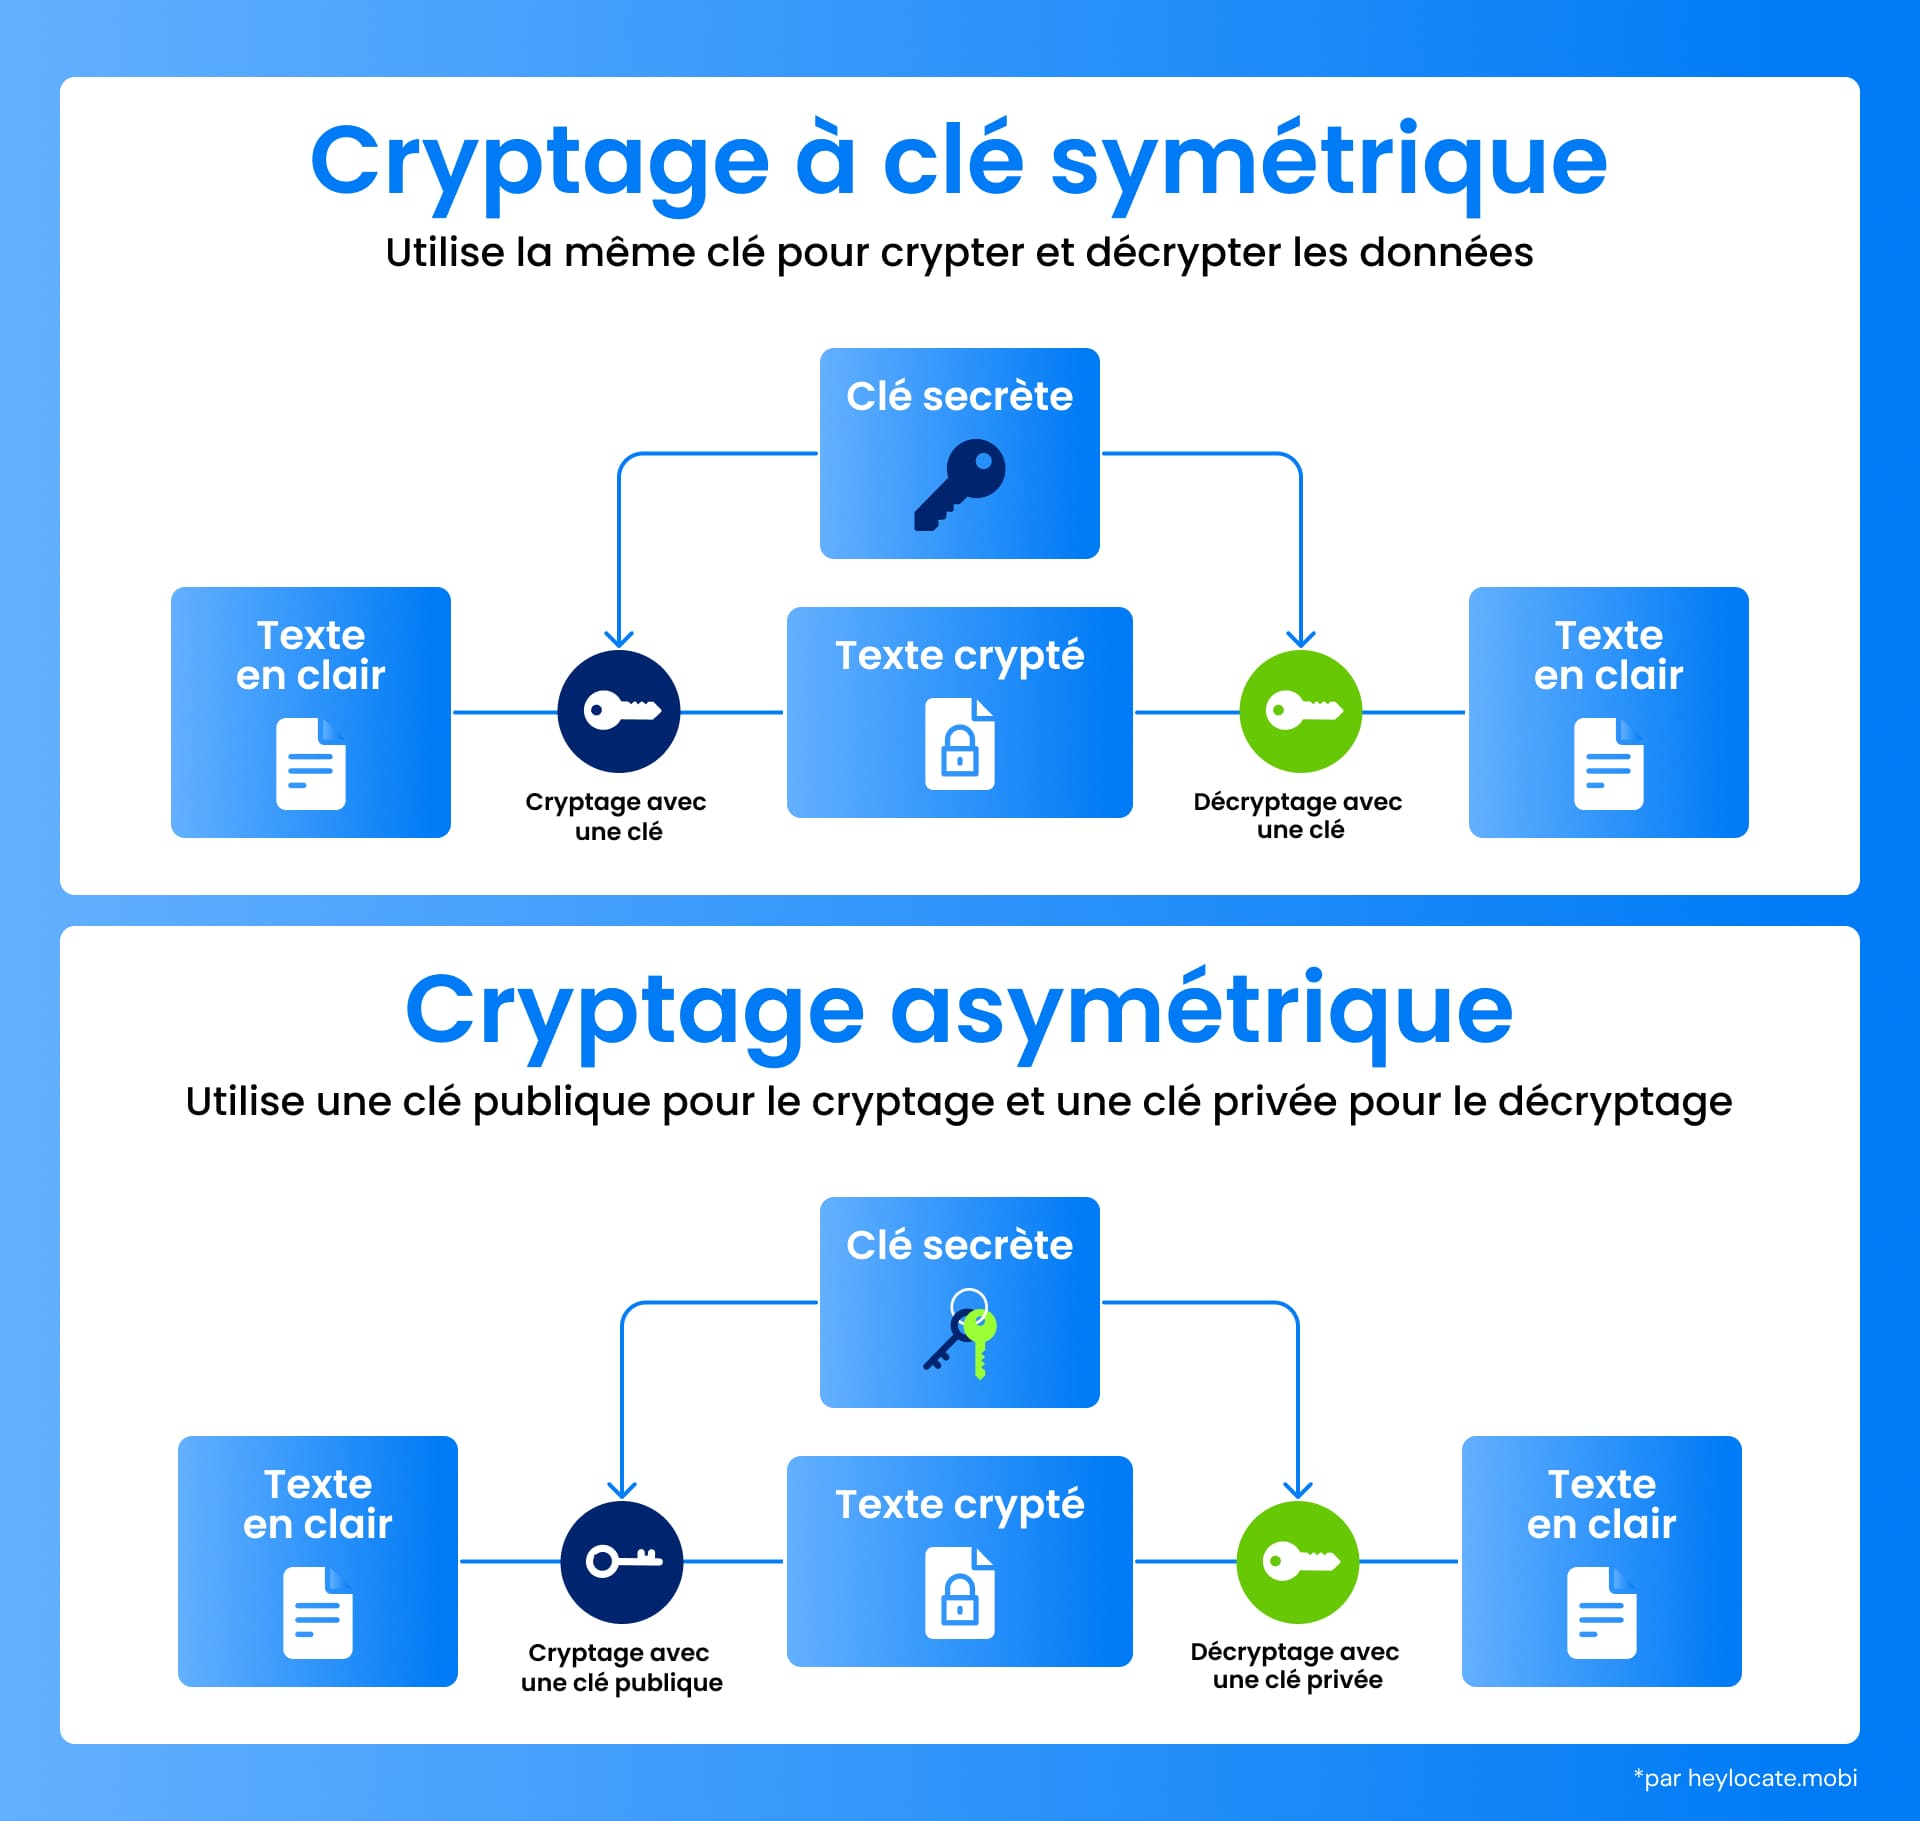 Une infographie expliquant le cryptage à clé symétrique avec la même clé pour le cryptage et le décryptage, par opposition au cryptage asymétrique qui utilise une clé publique pour crypter et une clé privée pour décrypter